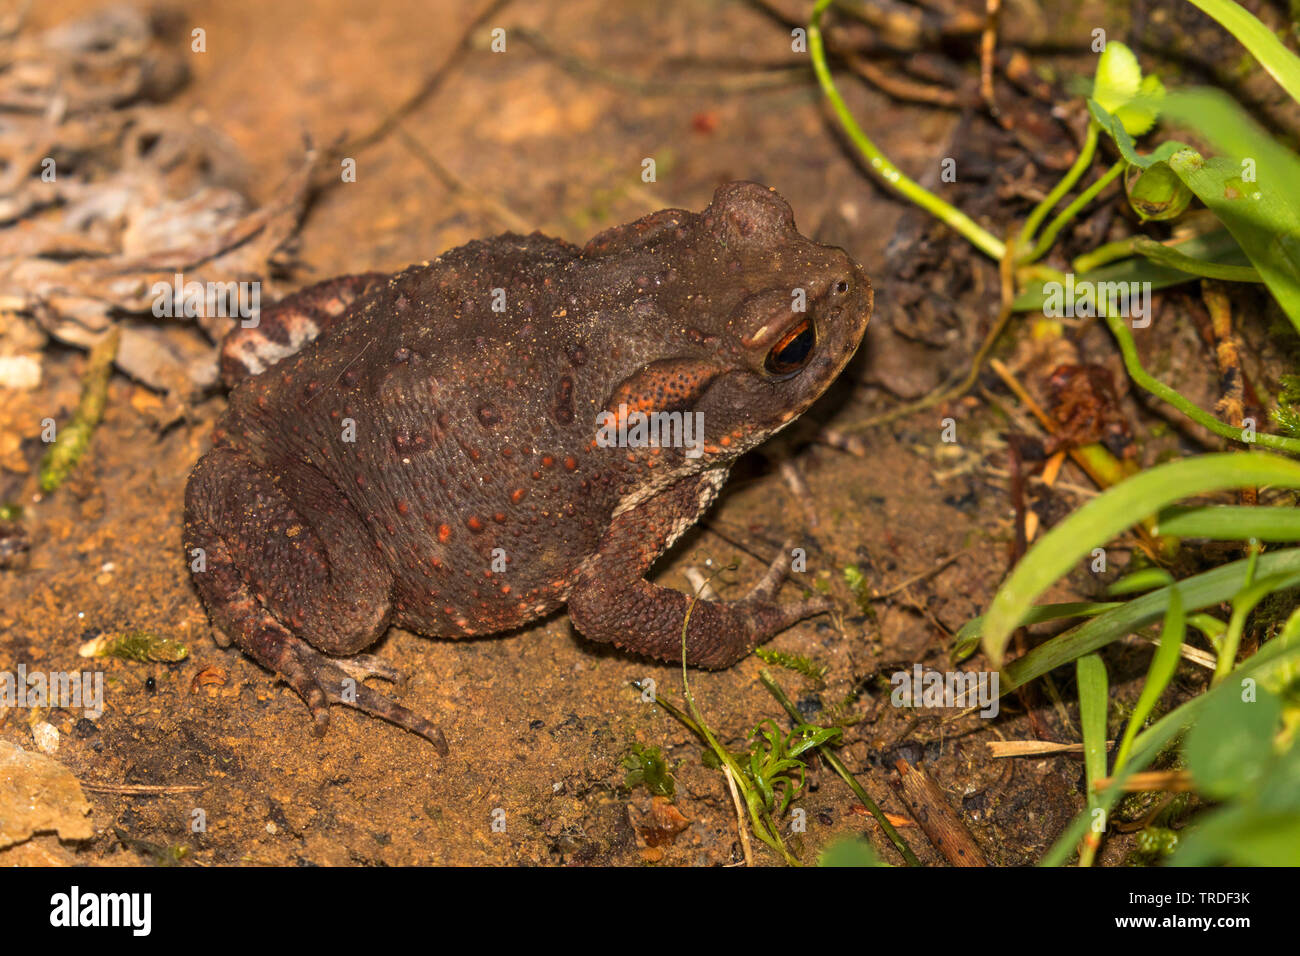 European common toad (Bufo bufo spinosus), juvenil, Italy, Tuscany Stock Photo